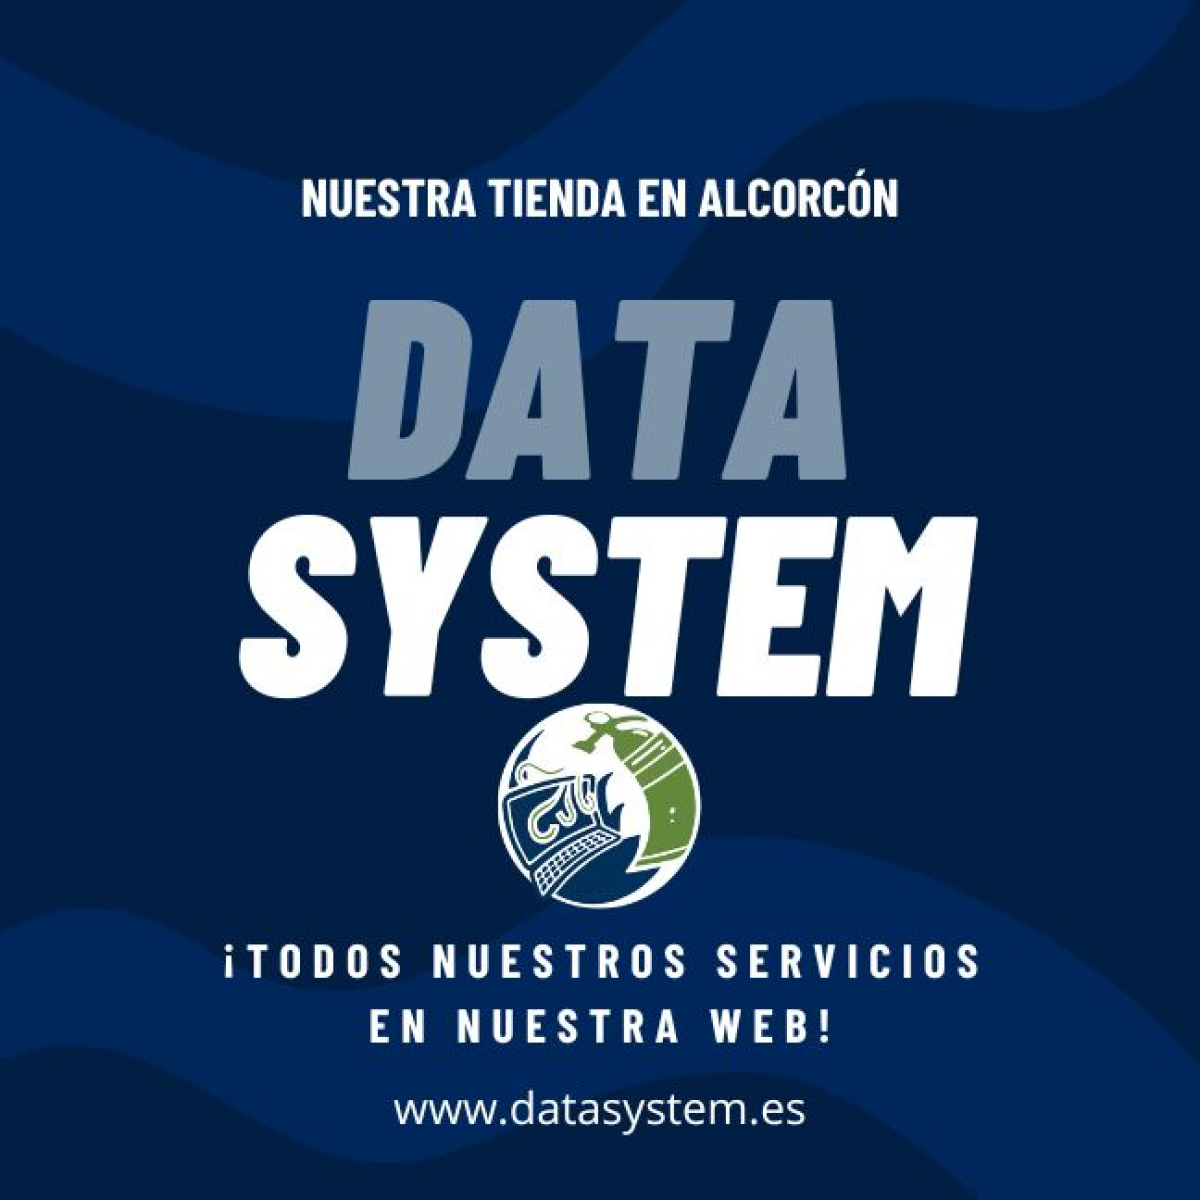 DATA SYSTEM - La opción confiable para la reparación de PC en Alcorcón Madrid.